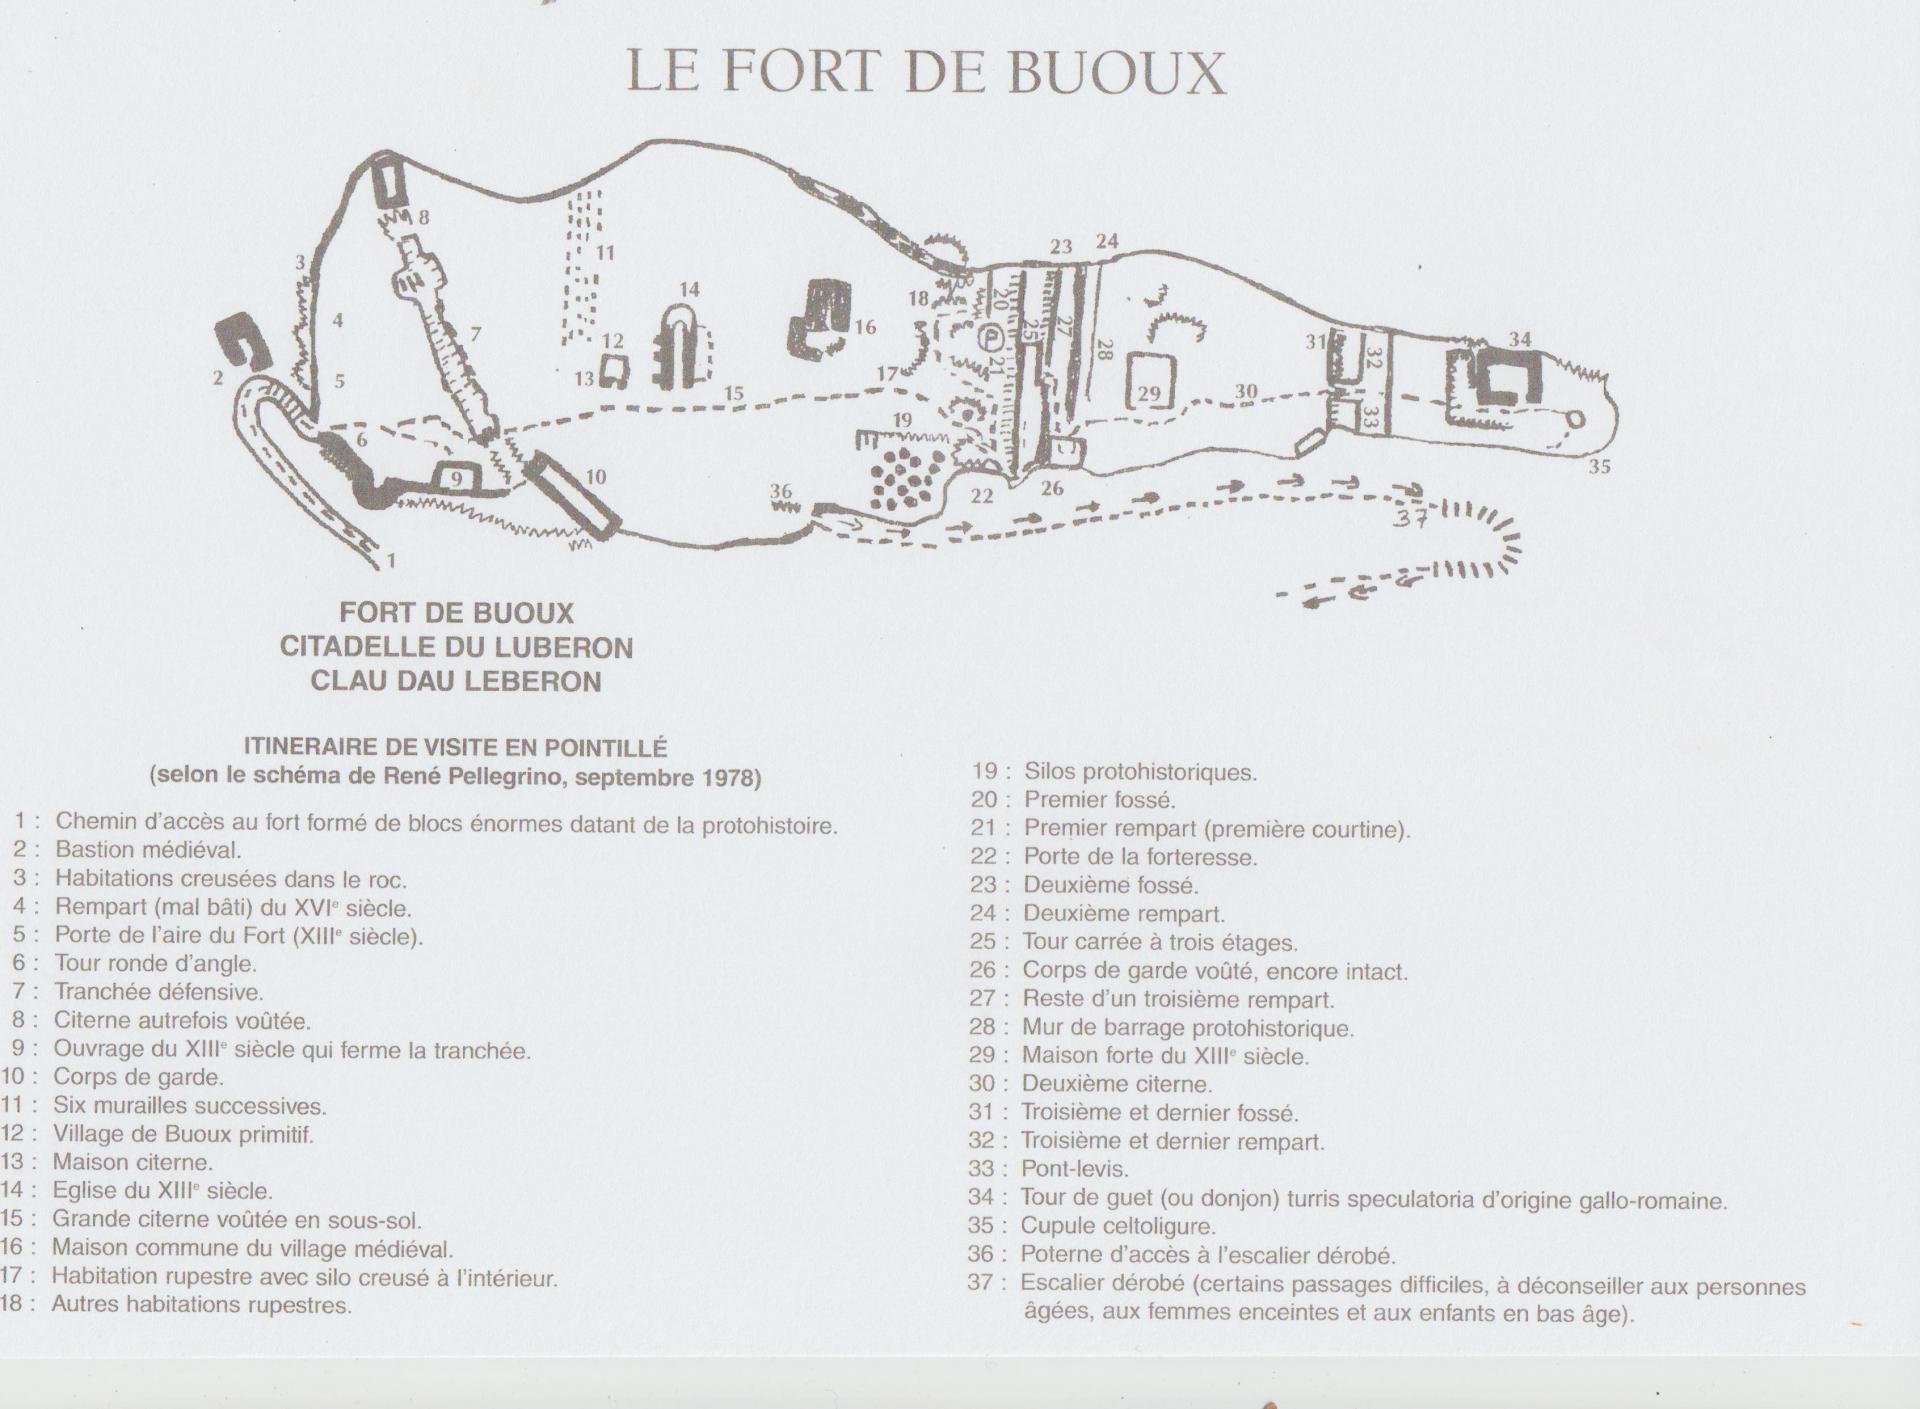 Fort de buoux photo plan du fort 001